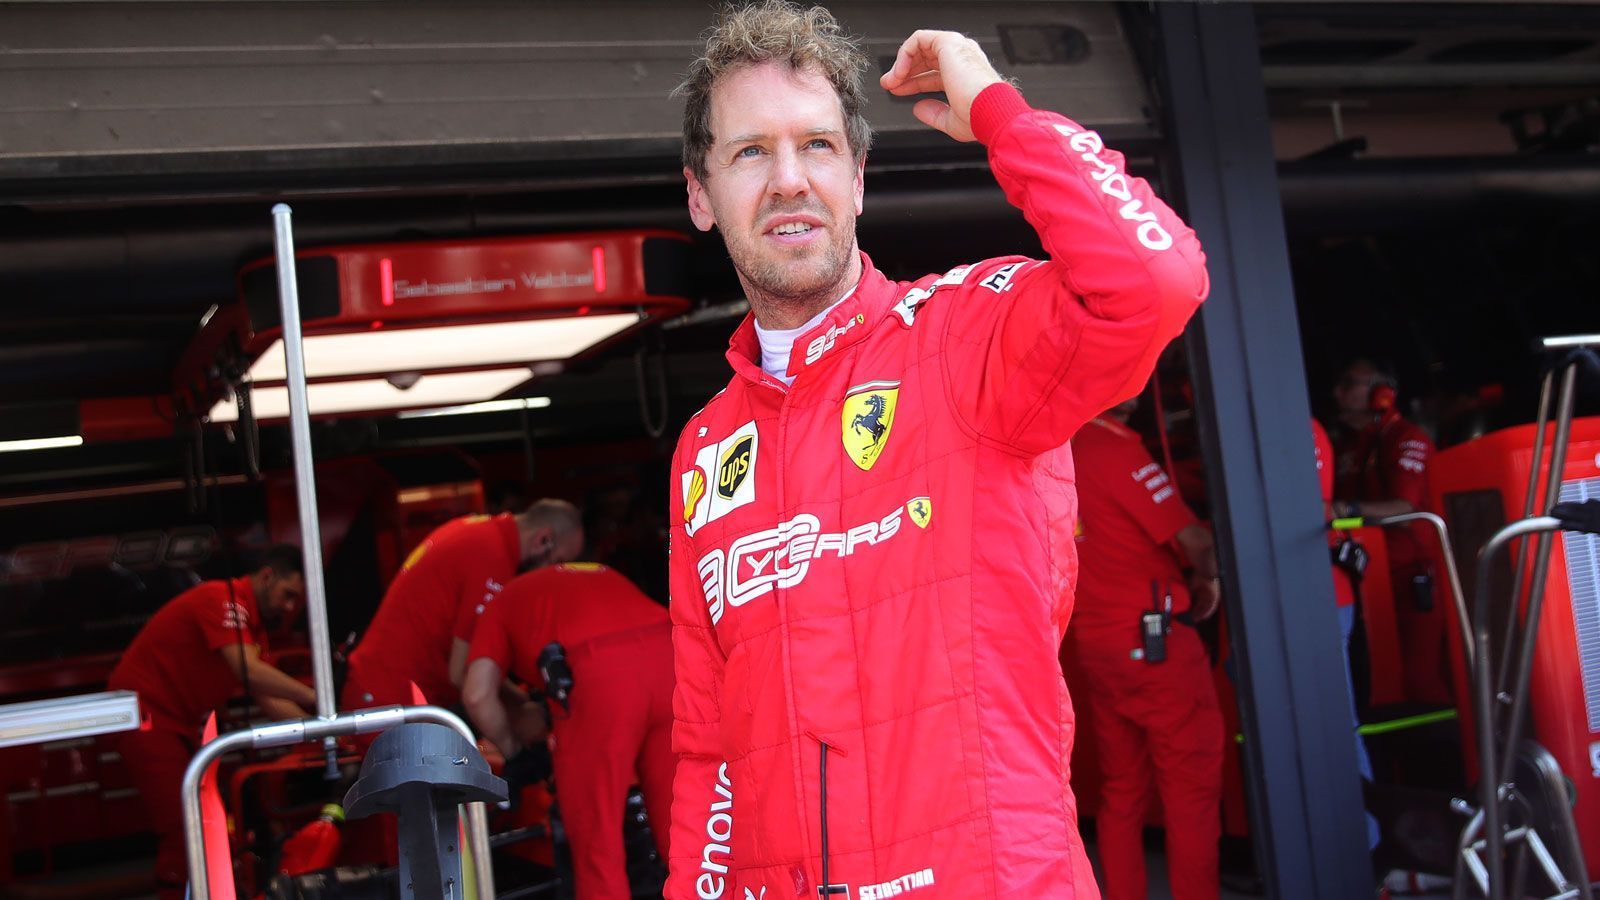 
                <strong>Sebastian Vettel (Scuderia Ferrari)</strong><br>
                Nach sechs Jahren bei Ferrari ist für Sebastian Vettel nach dieser Saison Schluss. Der viermalige Weltmeister und der italienische Rennstall haben die einvernehmliche Trennung bekanntgegeben. Aber wie sieht es bei den anderen Fahrern aus? ran.de zeigt euch die Vertragssituationen der Formel1-Stars.
              